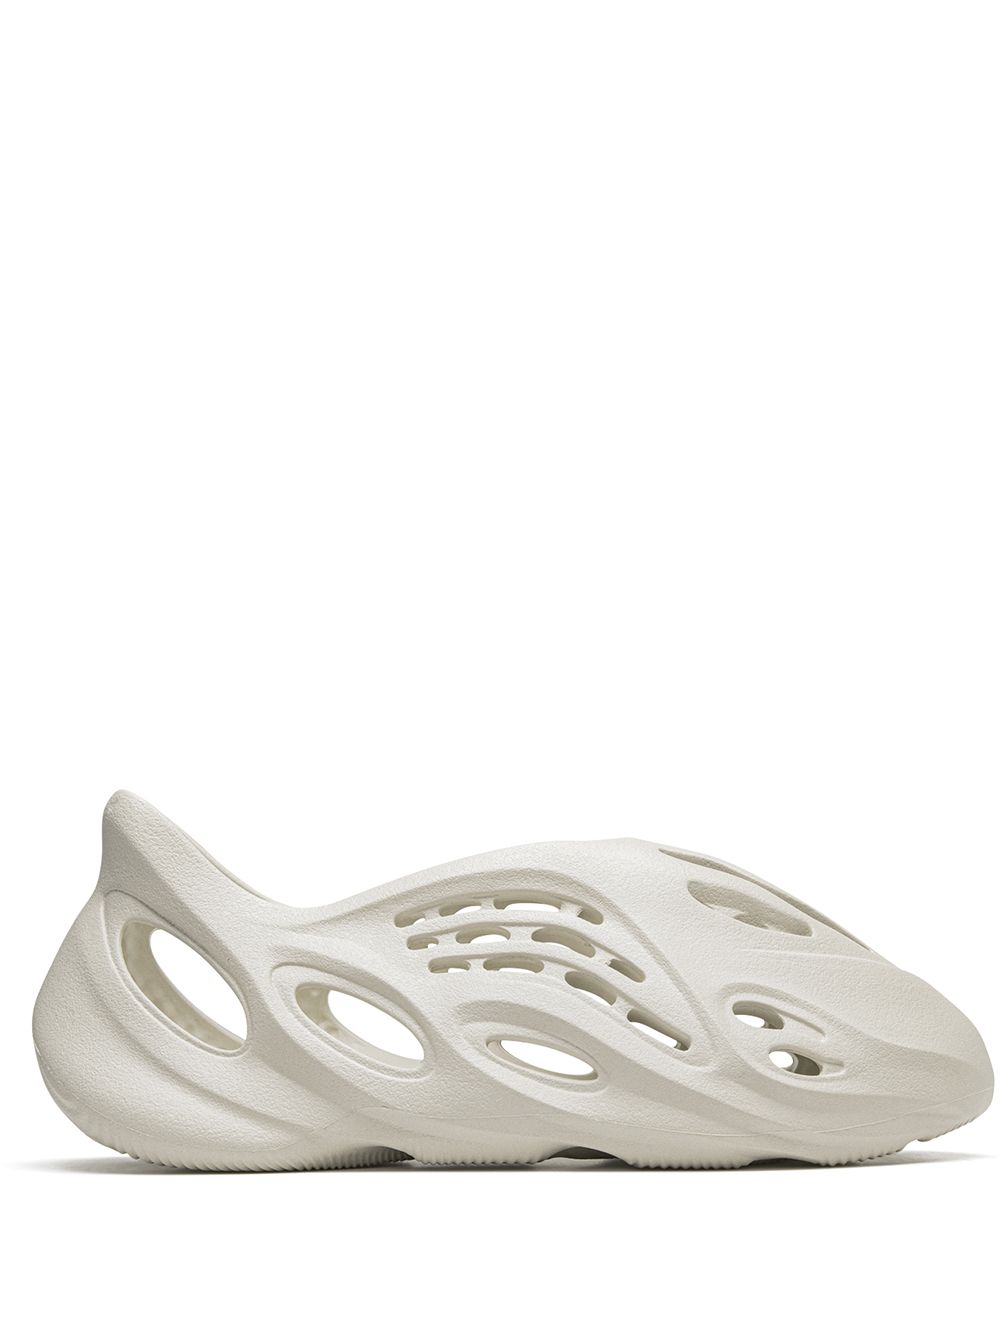 adidas Yeezy baskets YEEZY Foam Runner 'Ararat' - Blanc Top Merken Winkel